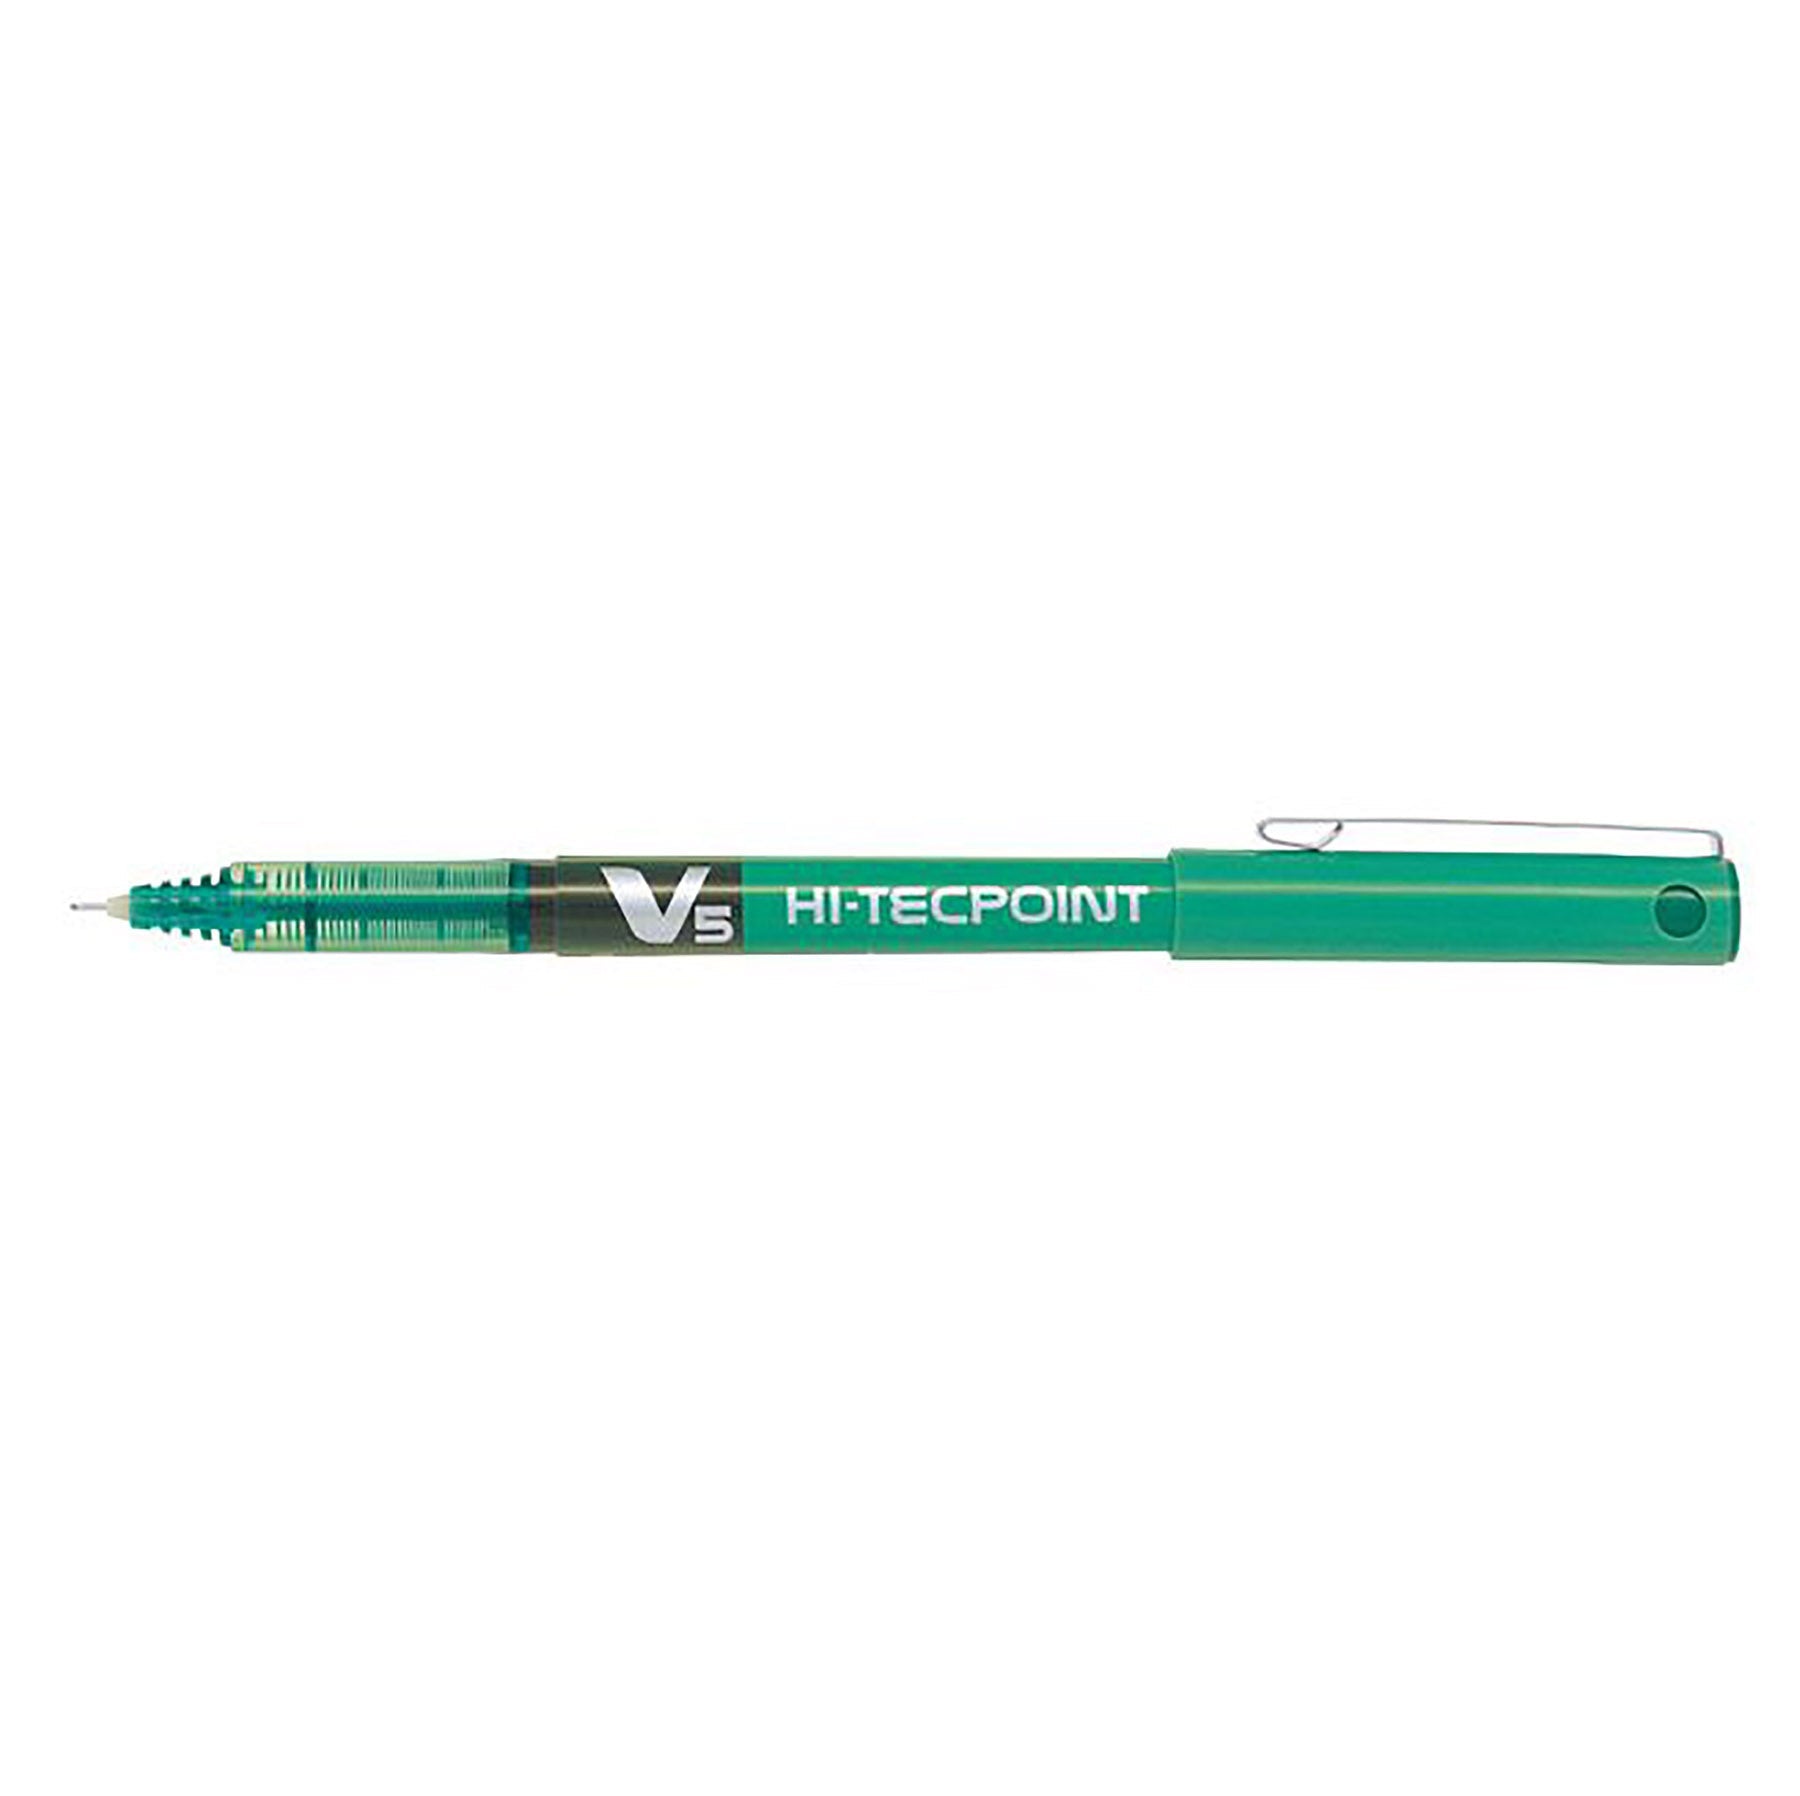 Pilot Hi-Tecpoint Pen with Cap - Green Ink 0.5mm